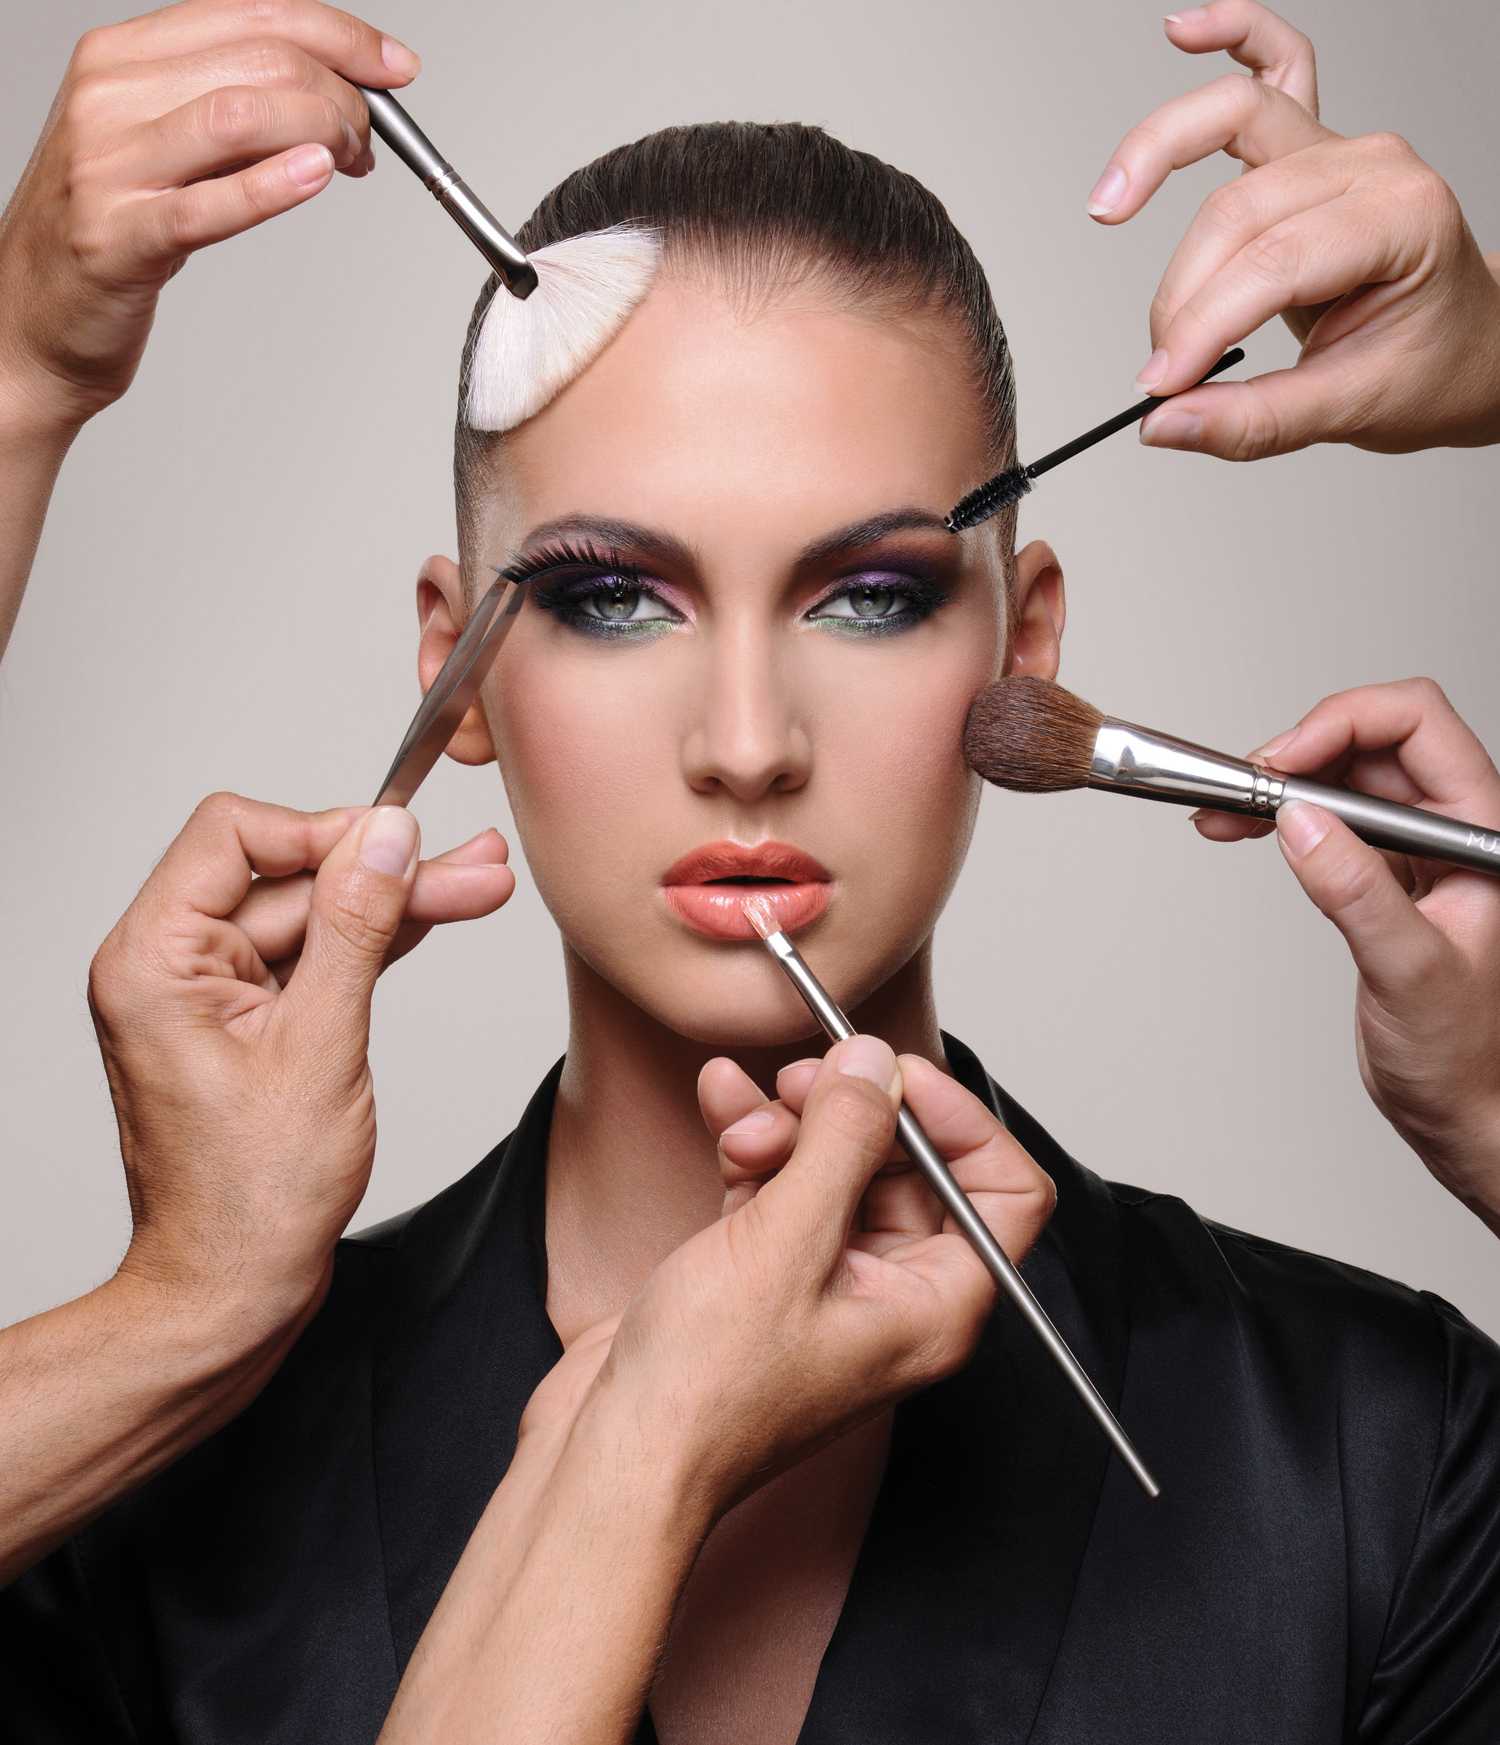 Хитрости антивозрастного макияжа: мастерство выглядеть моложе